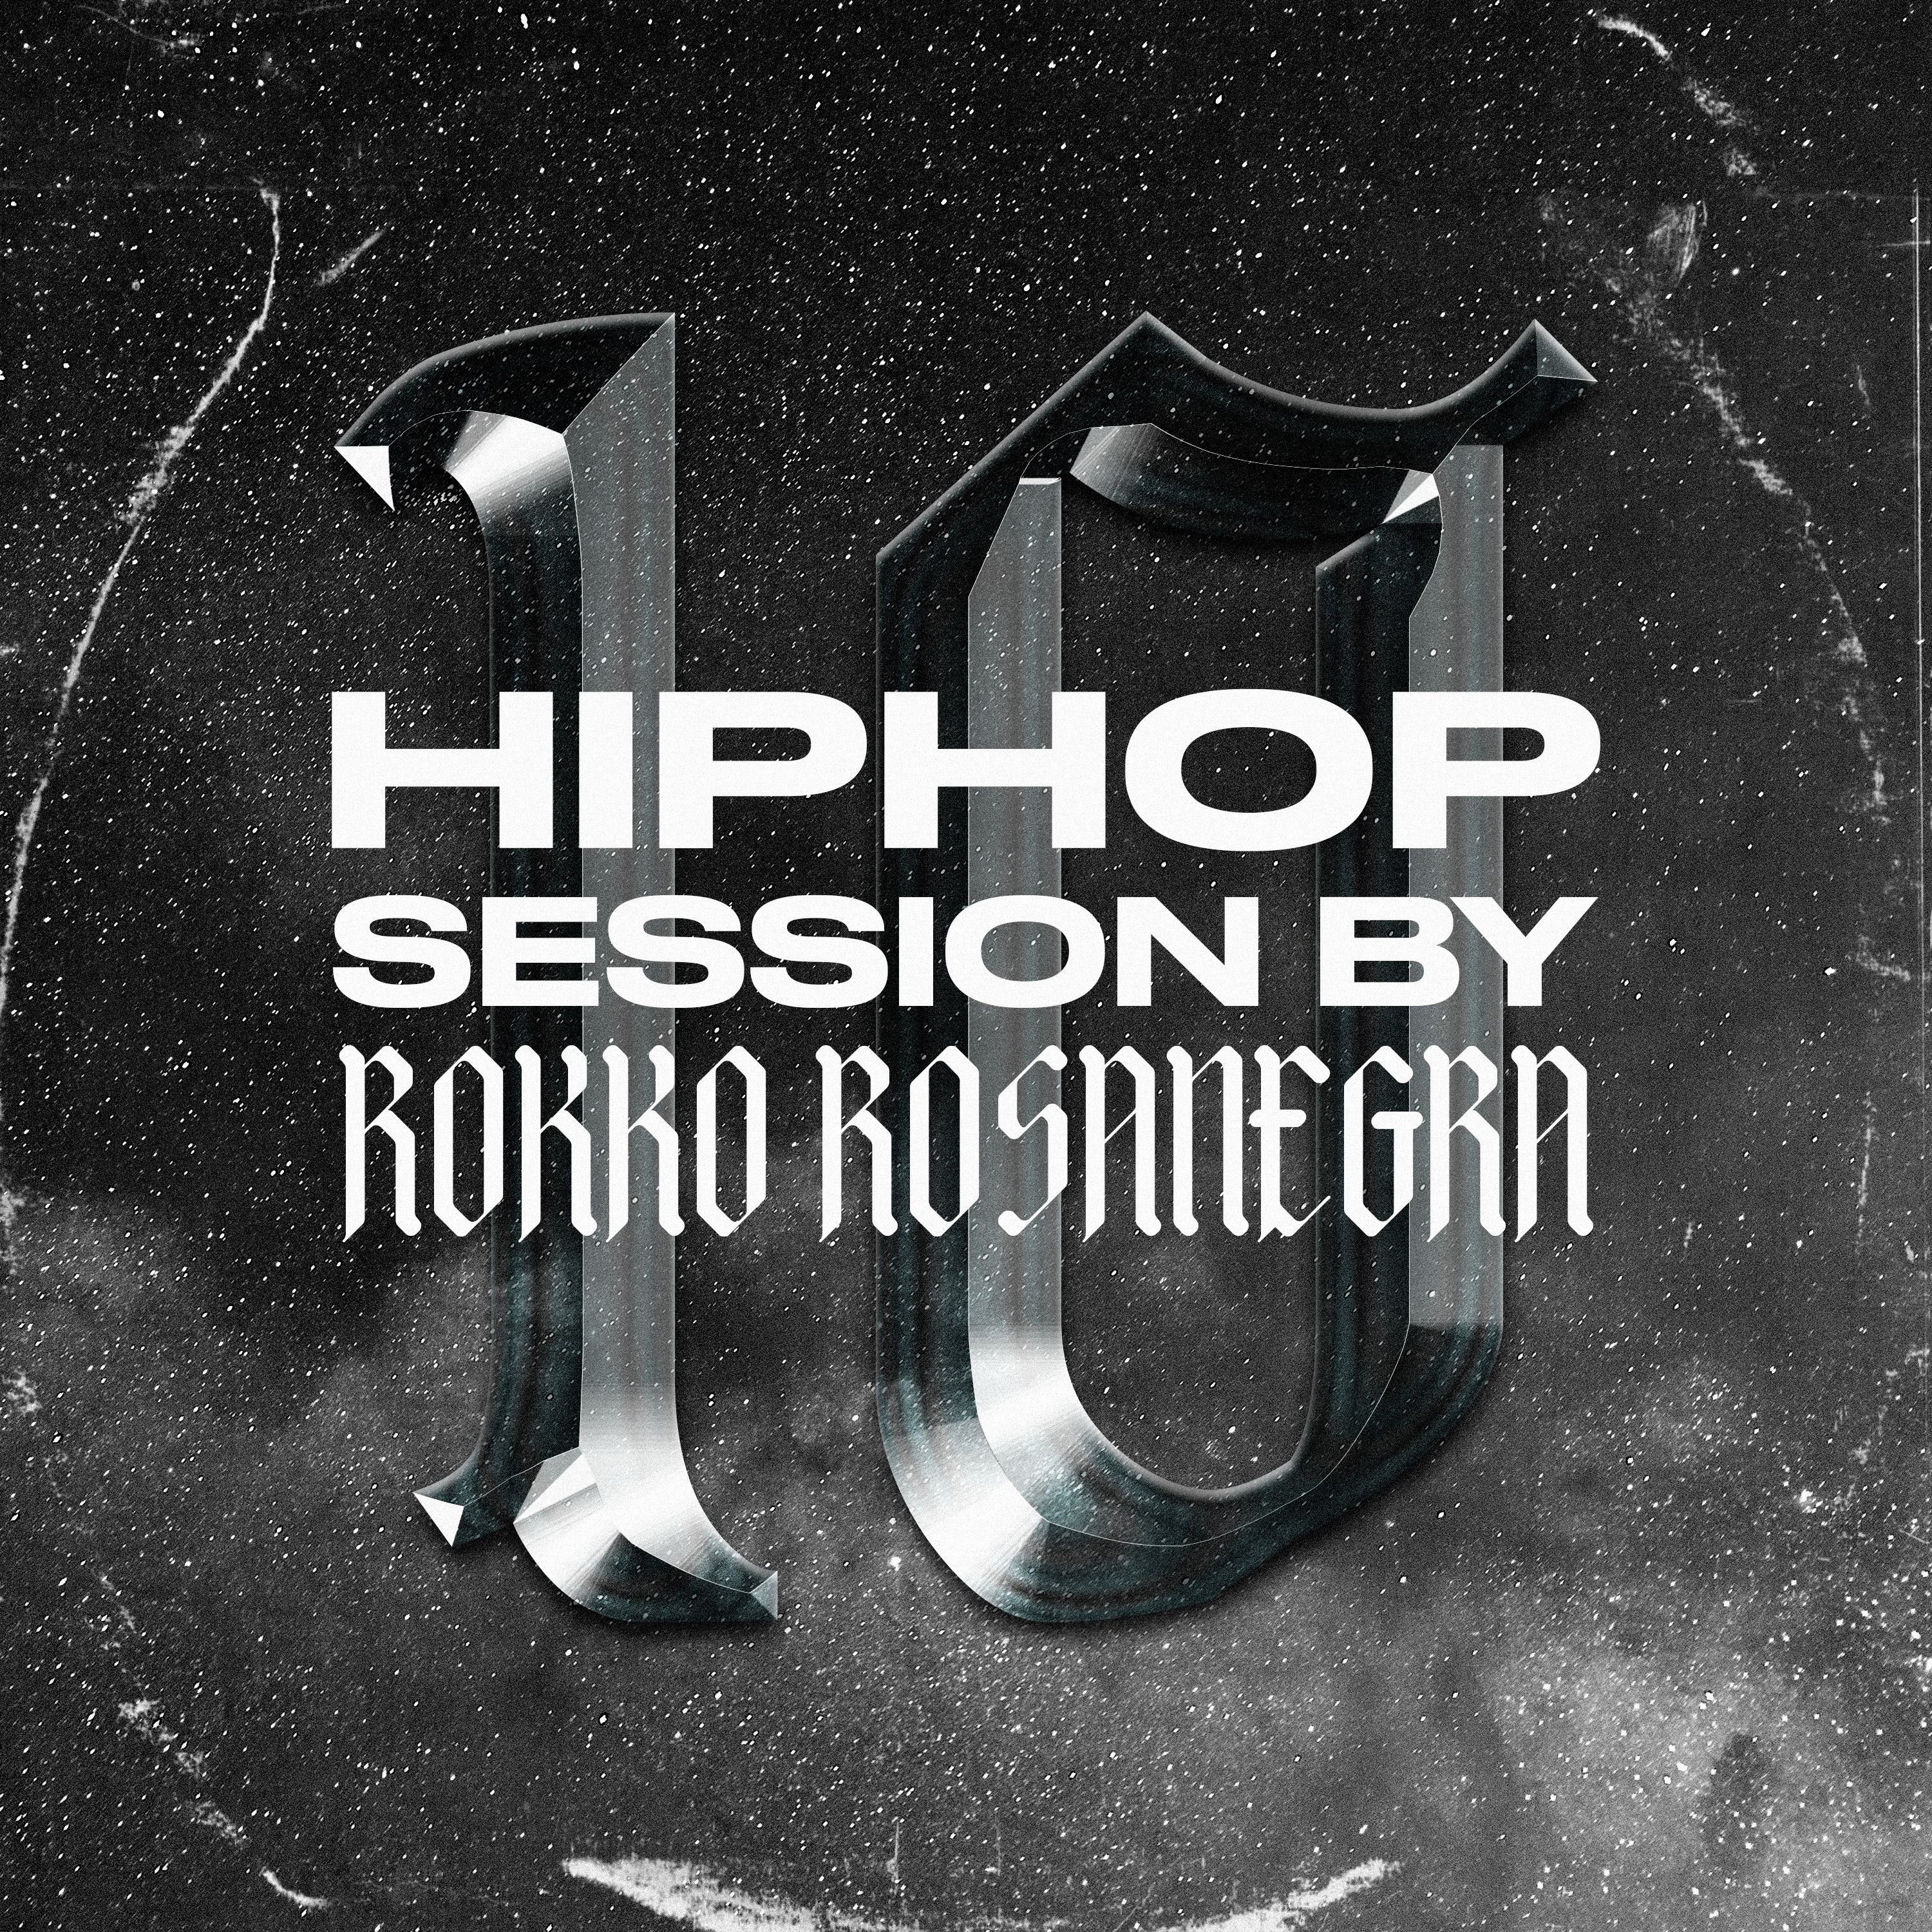 ഡൗൺലോഡ് HIP HOP SESSION 10 (DJ ROKKO ROSANEGRA)